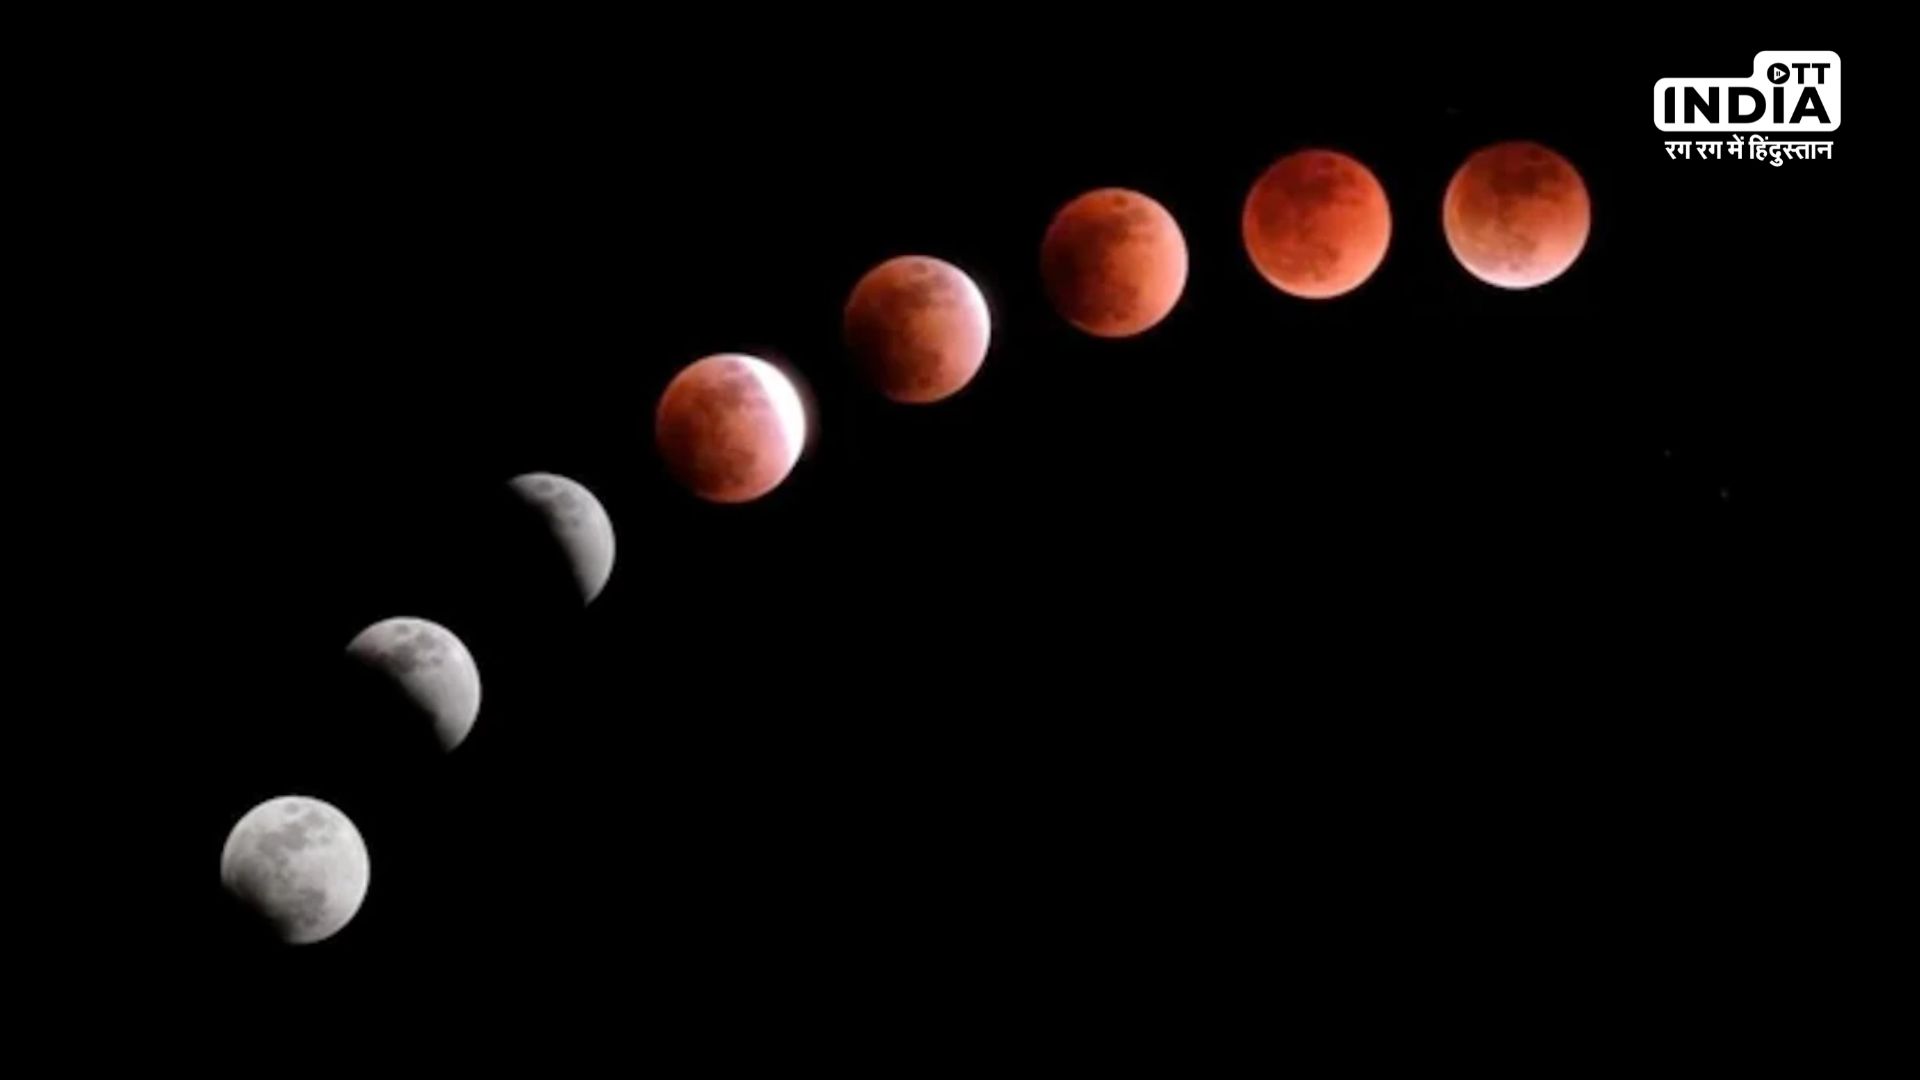 Lunar Eclipse 2023: देखने चाहते है चंद्र ग्रहण तो जान लें कहां से उठा सकते है नजारों का लुत्फ, पढ़िए पूरी खबर…